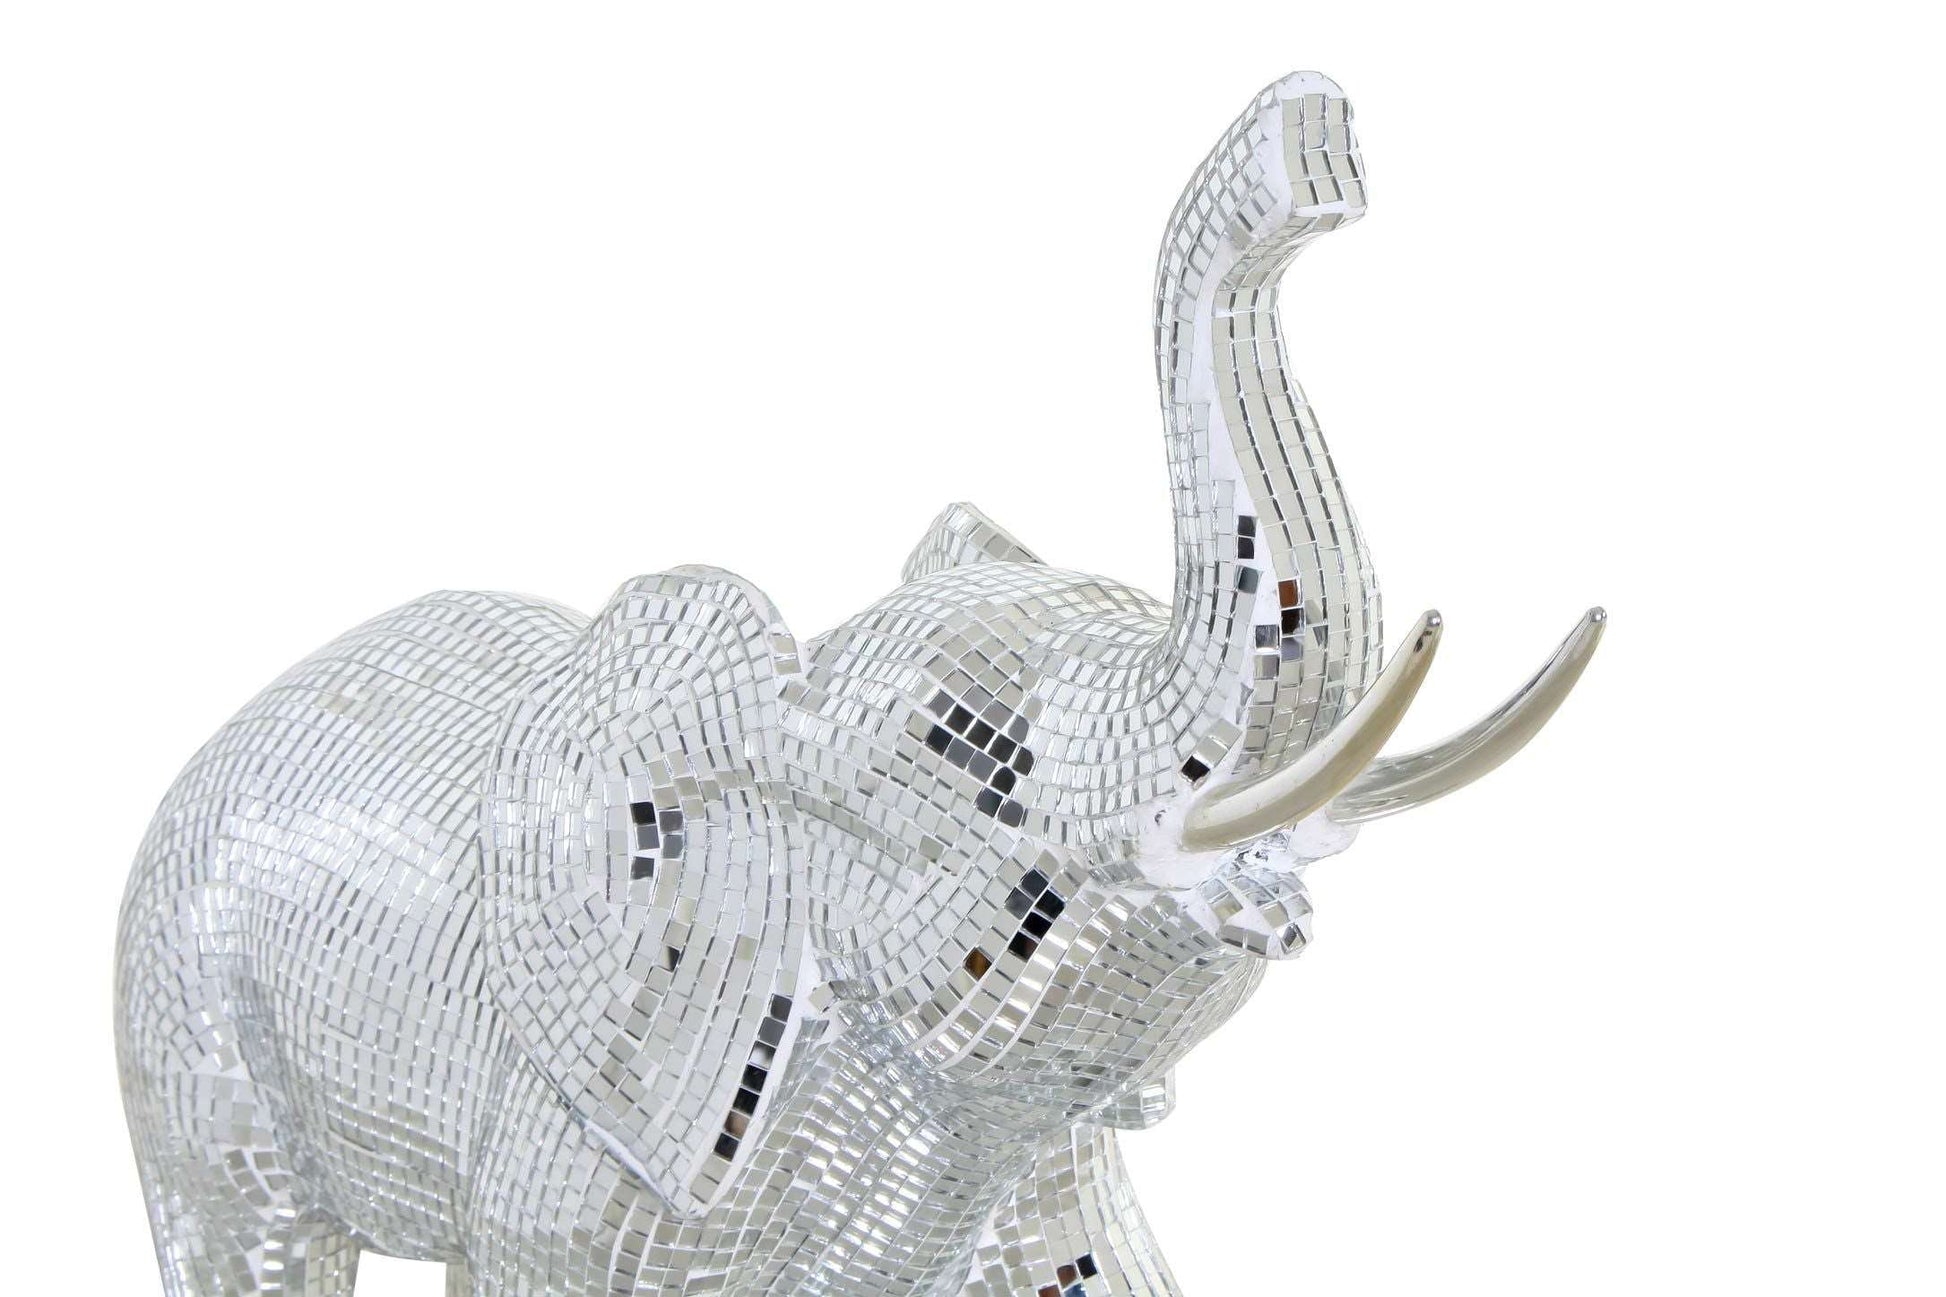 Figura resina Elefante cromado plateado